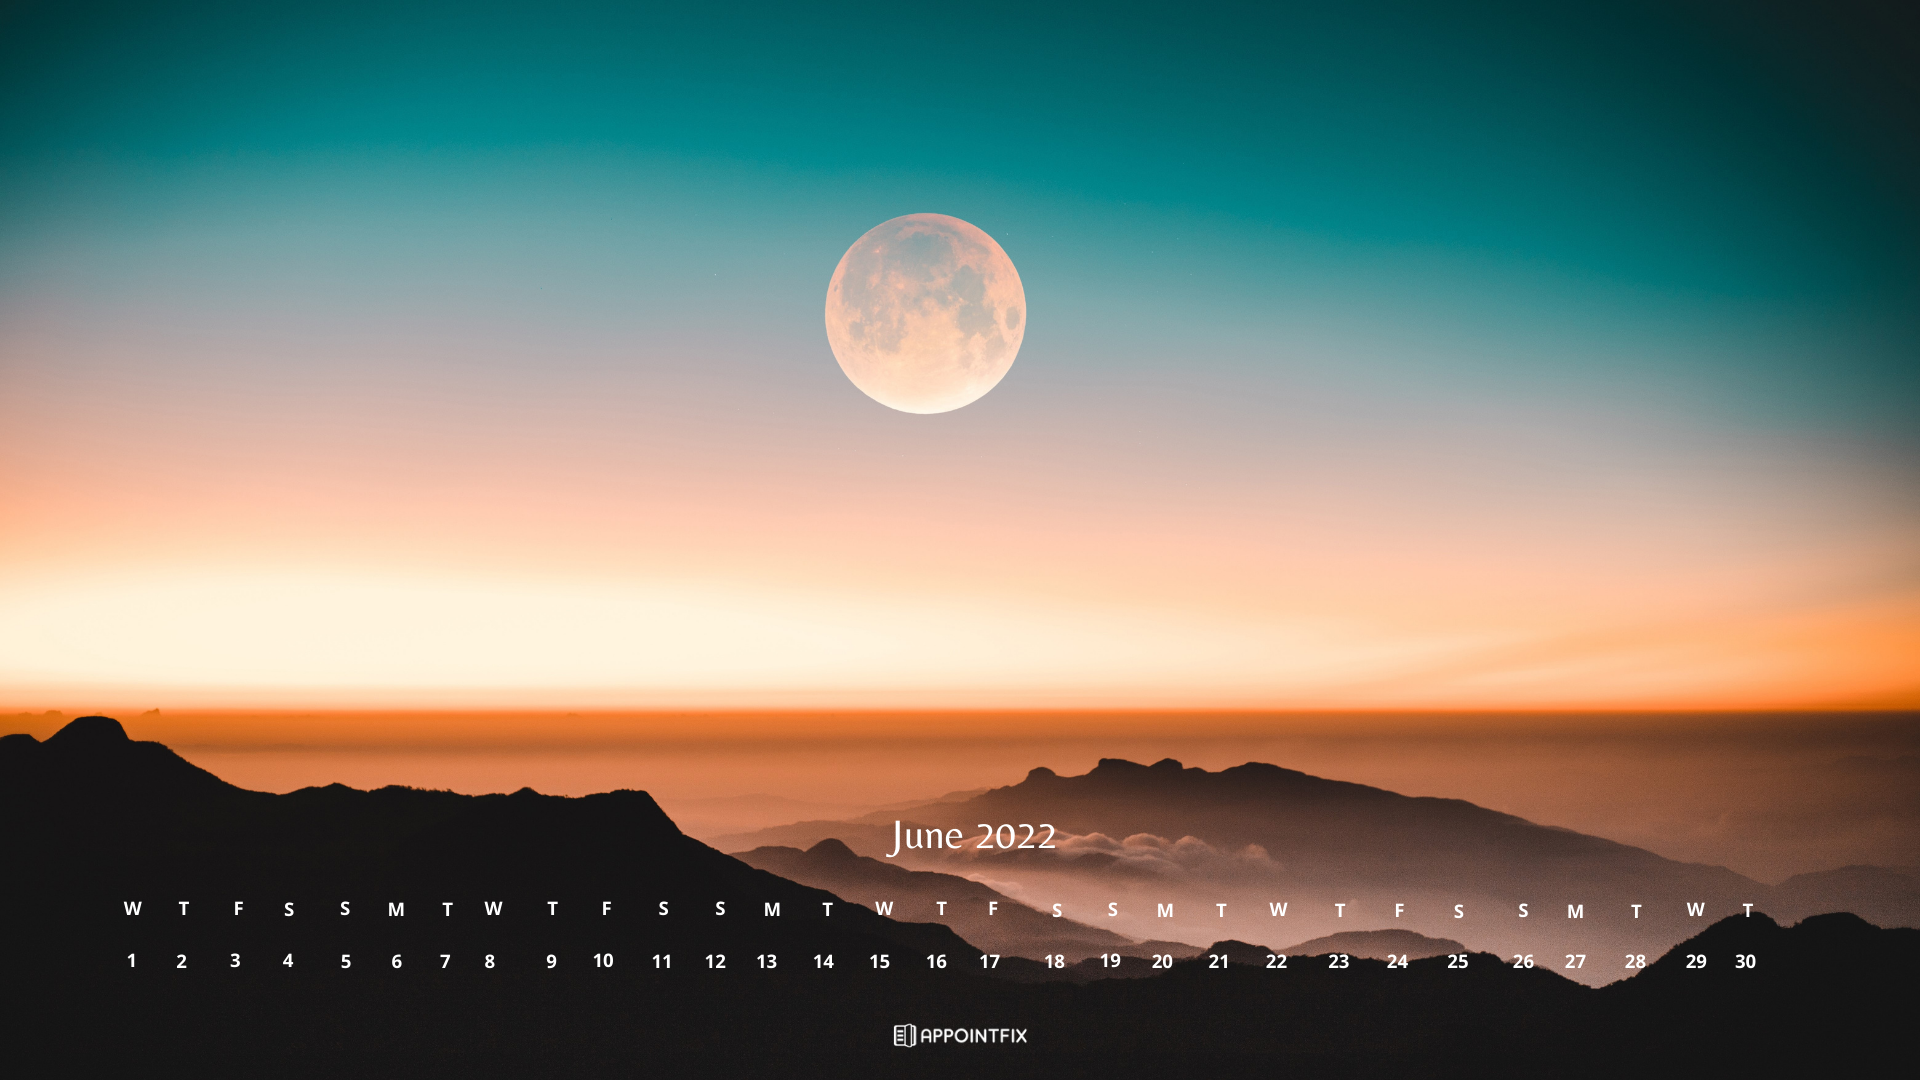 Đón chào tháng 6 - Mùa hè đến rực rỡ. Lịch Desktop tháng 6 năm 2022 miễn phí giúp bạn cập nhật lịch trình và lên kế hoạch cho những kỳ nghỉ sắp tới. Hãy chọn ngay ảnh và tải về để sử dụng ngay hôm nay!